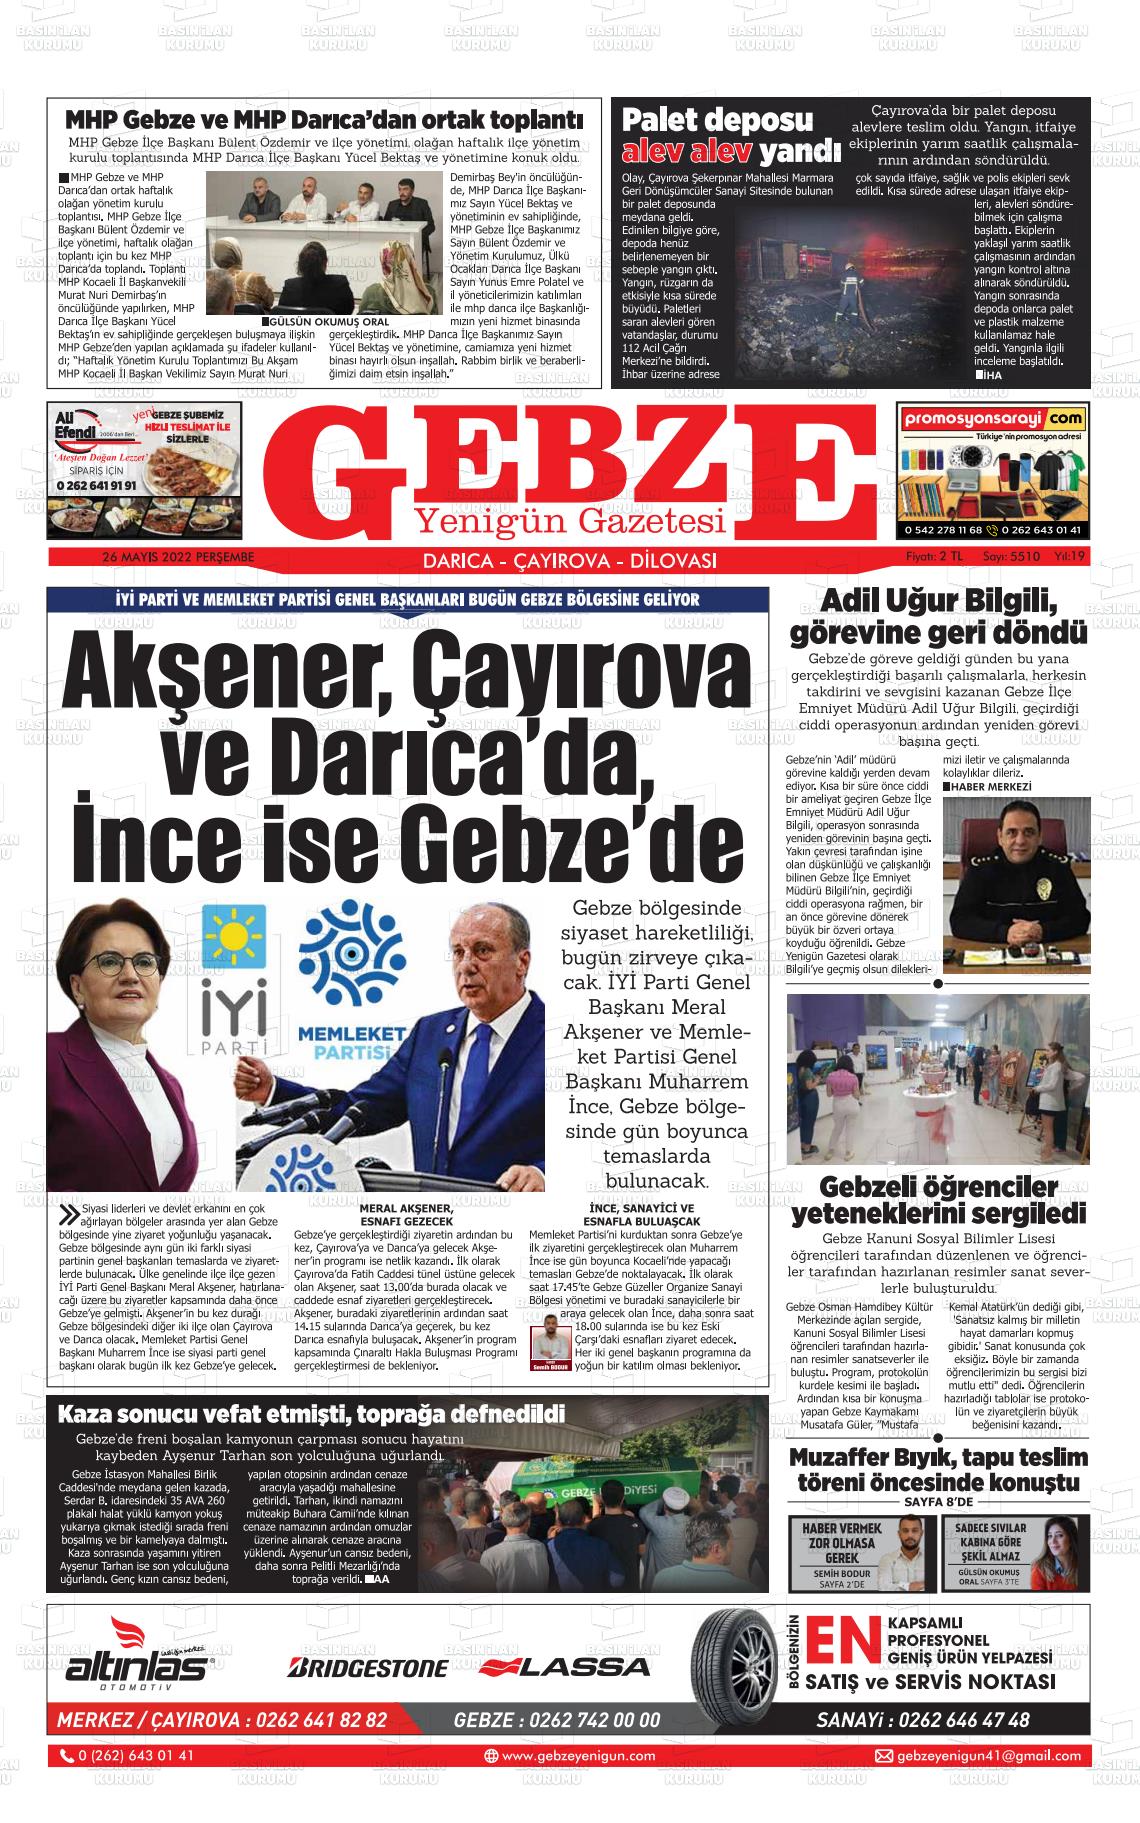 26 Mayıs 2022 Gebze Yenigün Gazete Manşeti